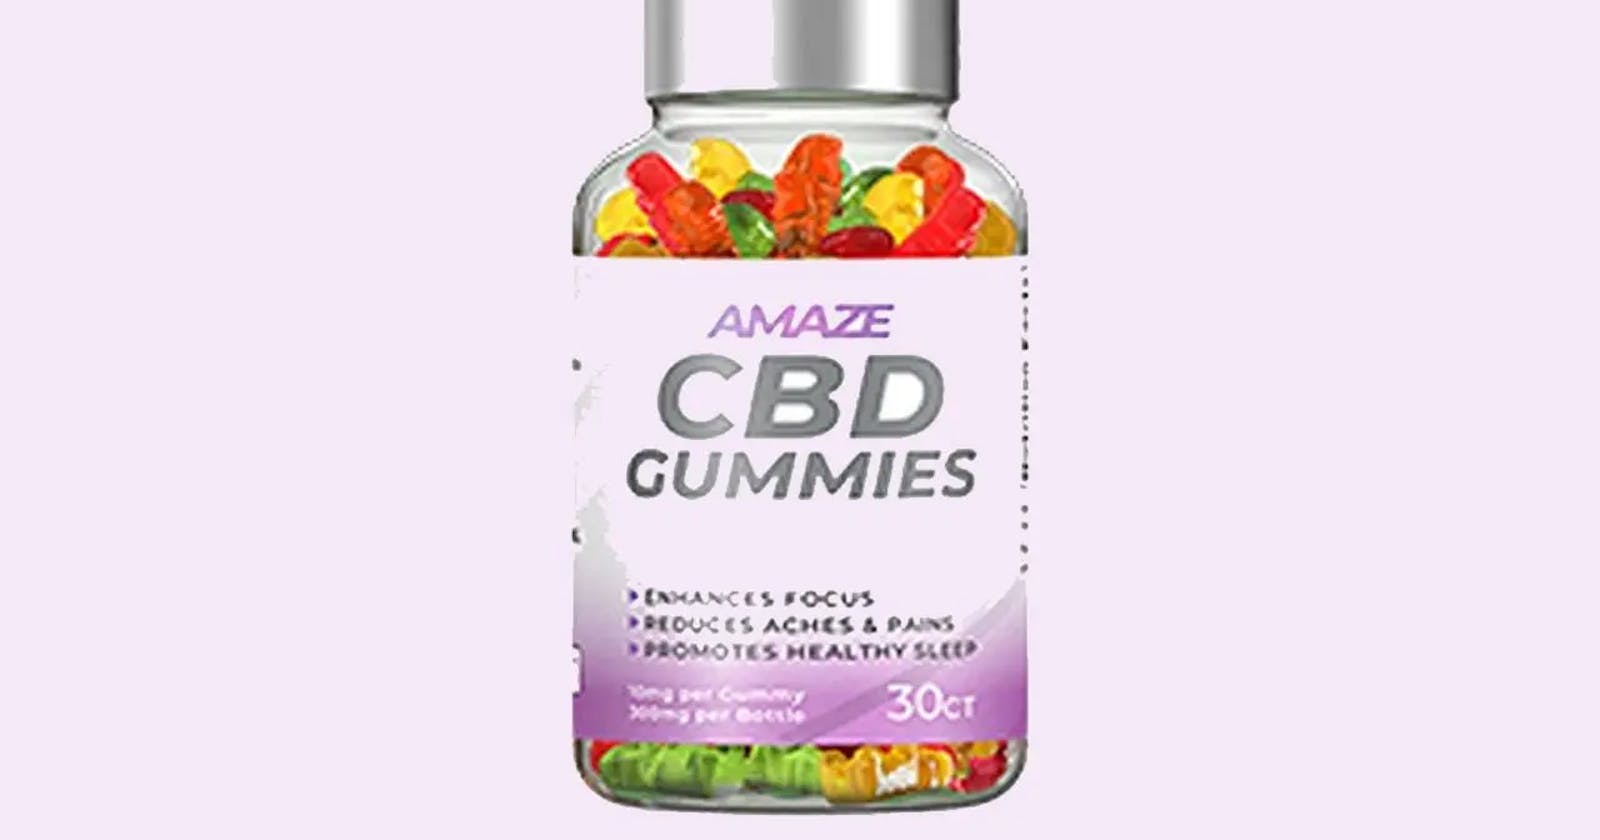 Amaze CBD Gummies Reviews : Is It Legitimate Or Fake?